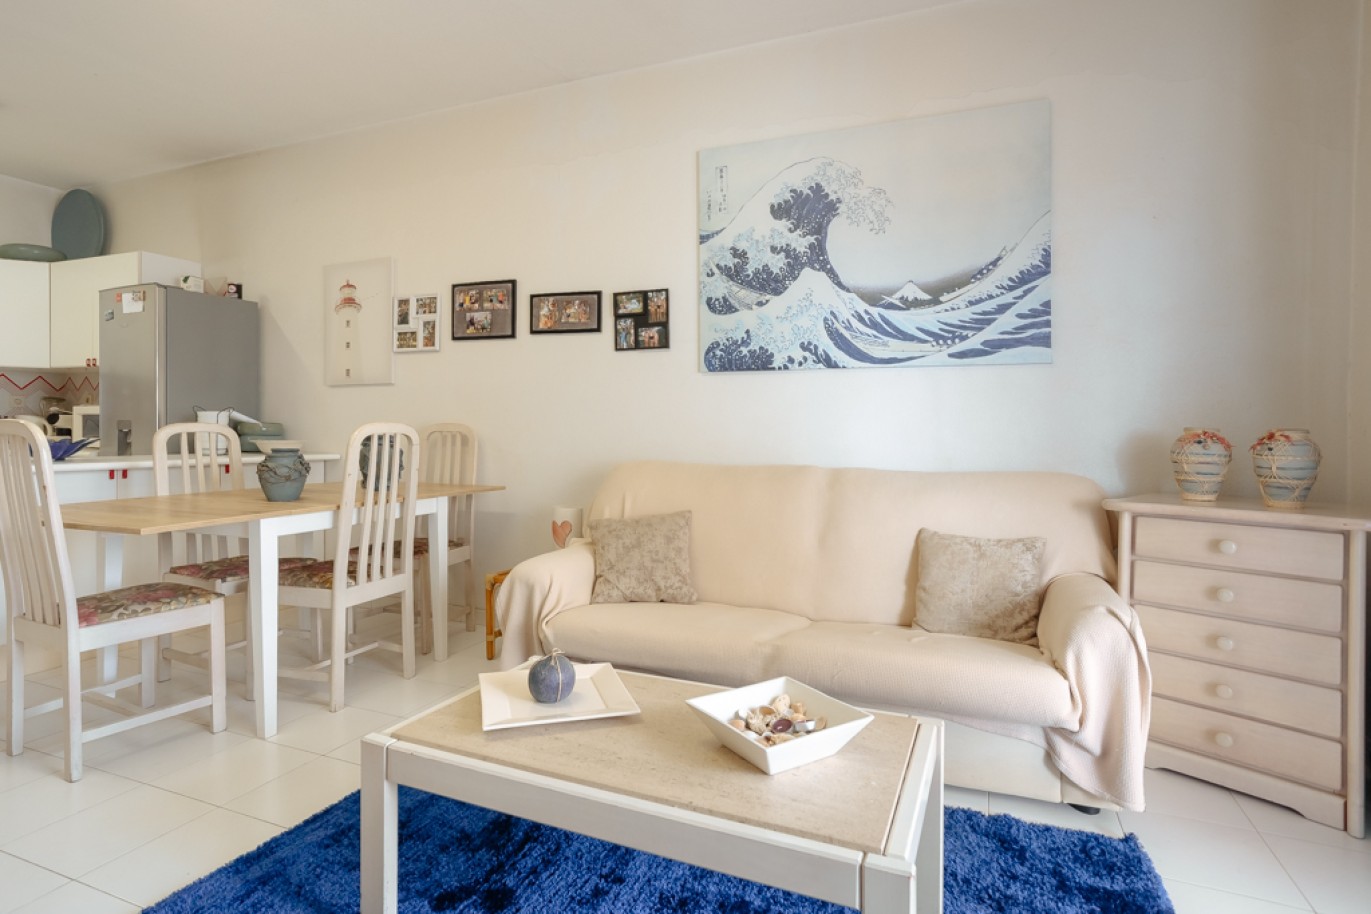 Apartamento com 1+1 quartos, com vista mar, para venda em Porches, Algarve_257025